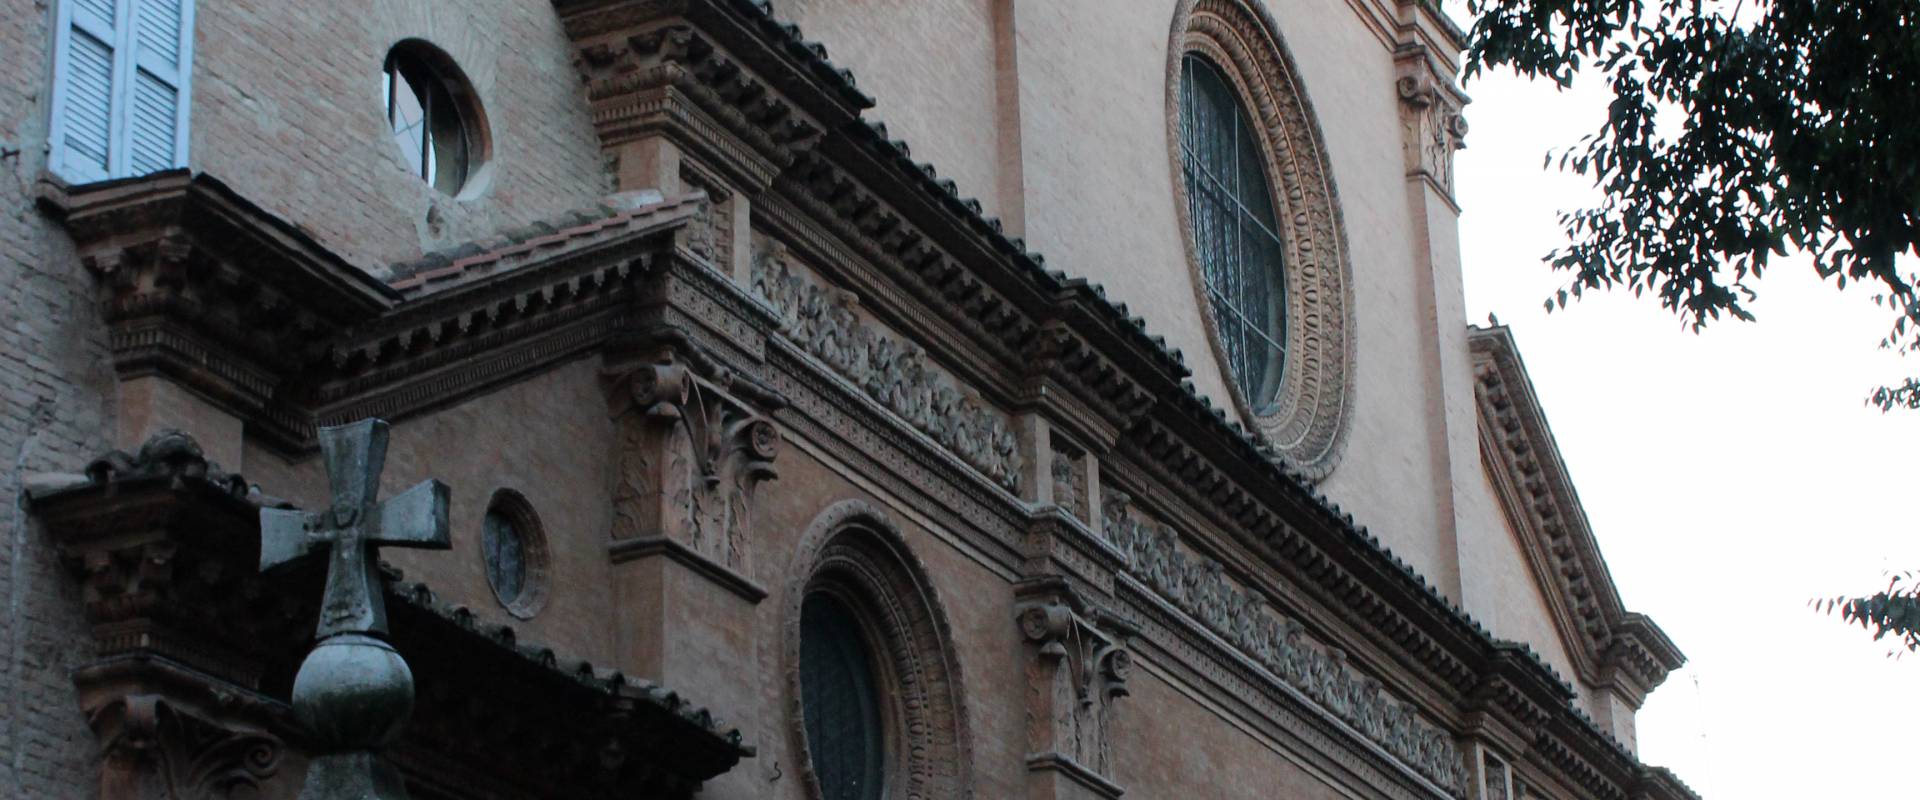 Facciata Chiesa di San Pietro di Modena foto di BeaDominianni